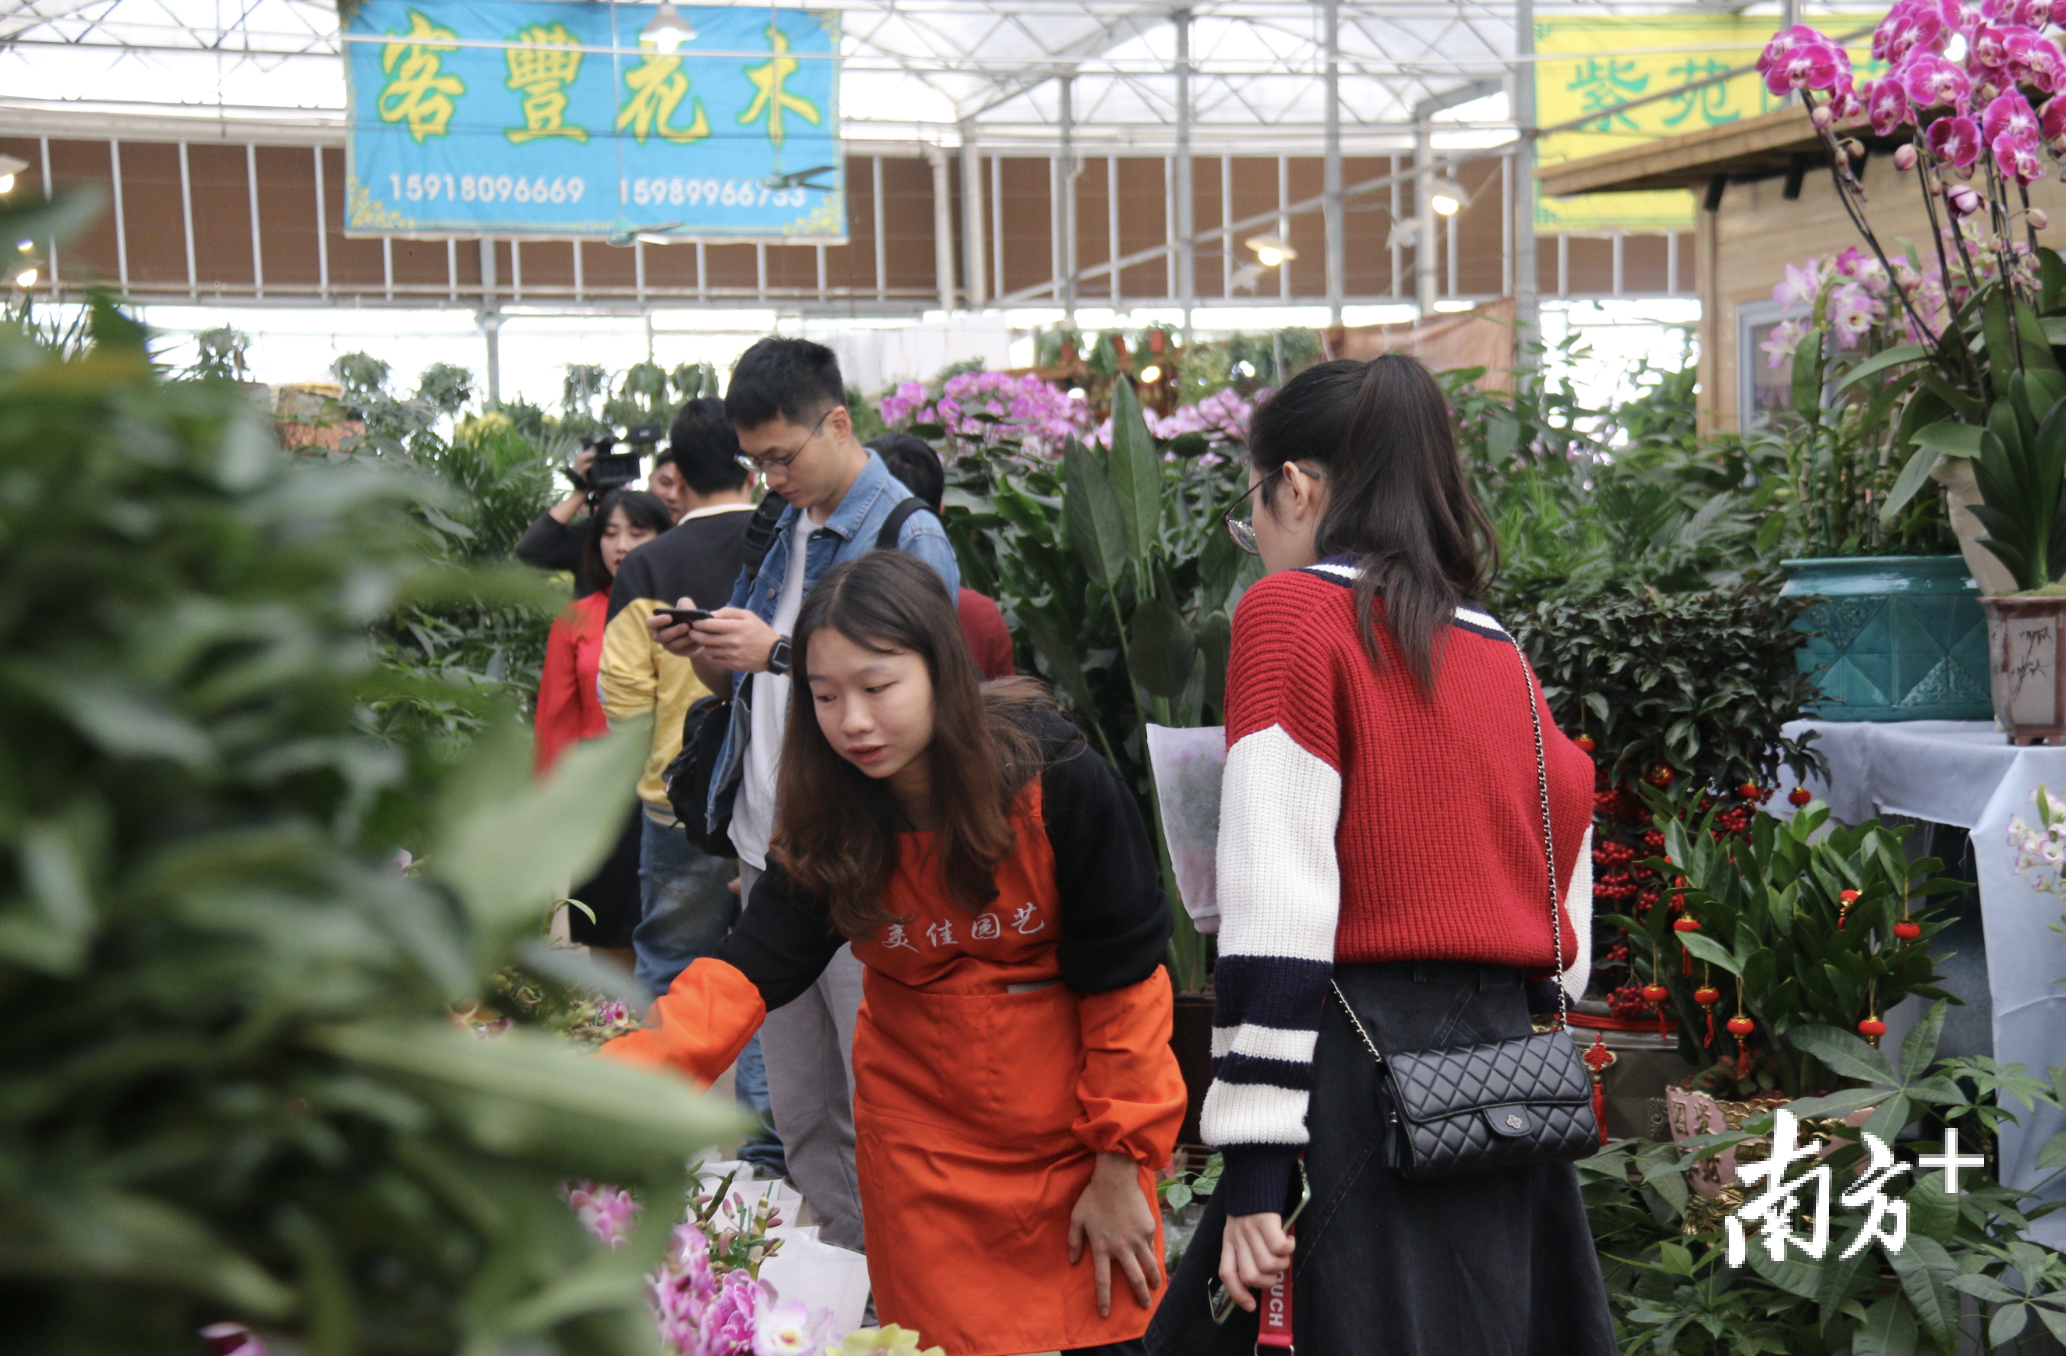 市民在花市上驻足挑选花卉。受访者供图